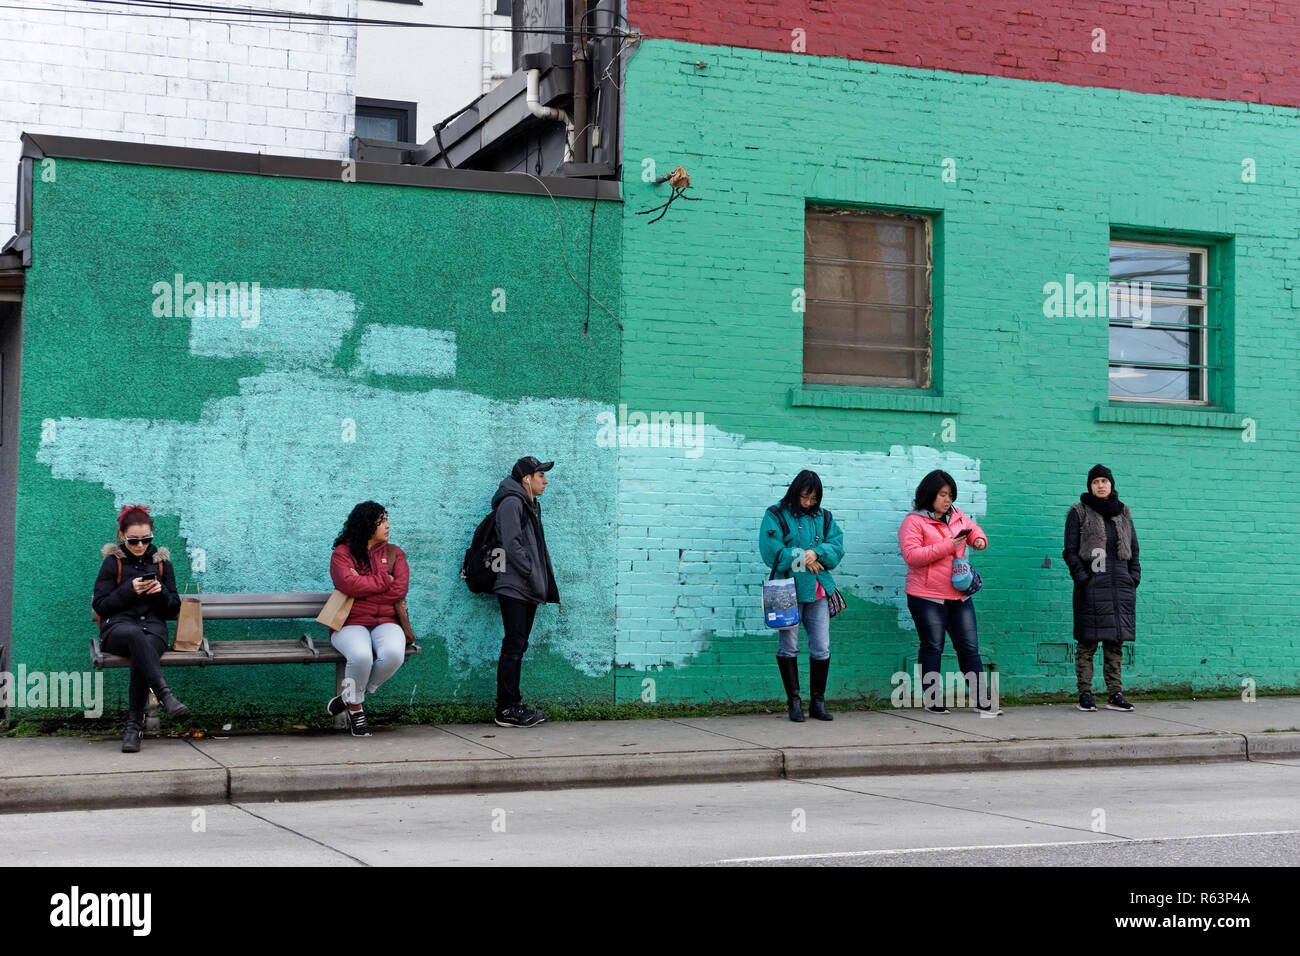 La gente esperando el autobús en una calle de Vancouver, BC, Canadá Foto de stock